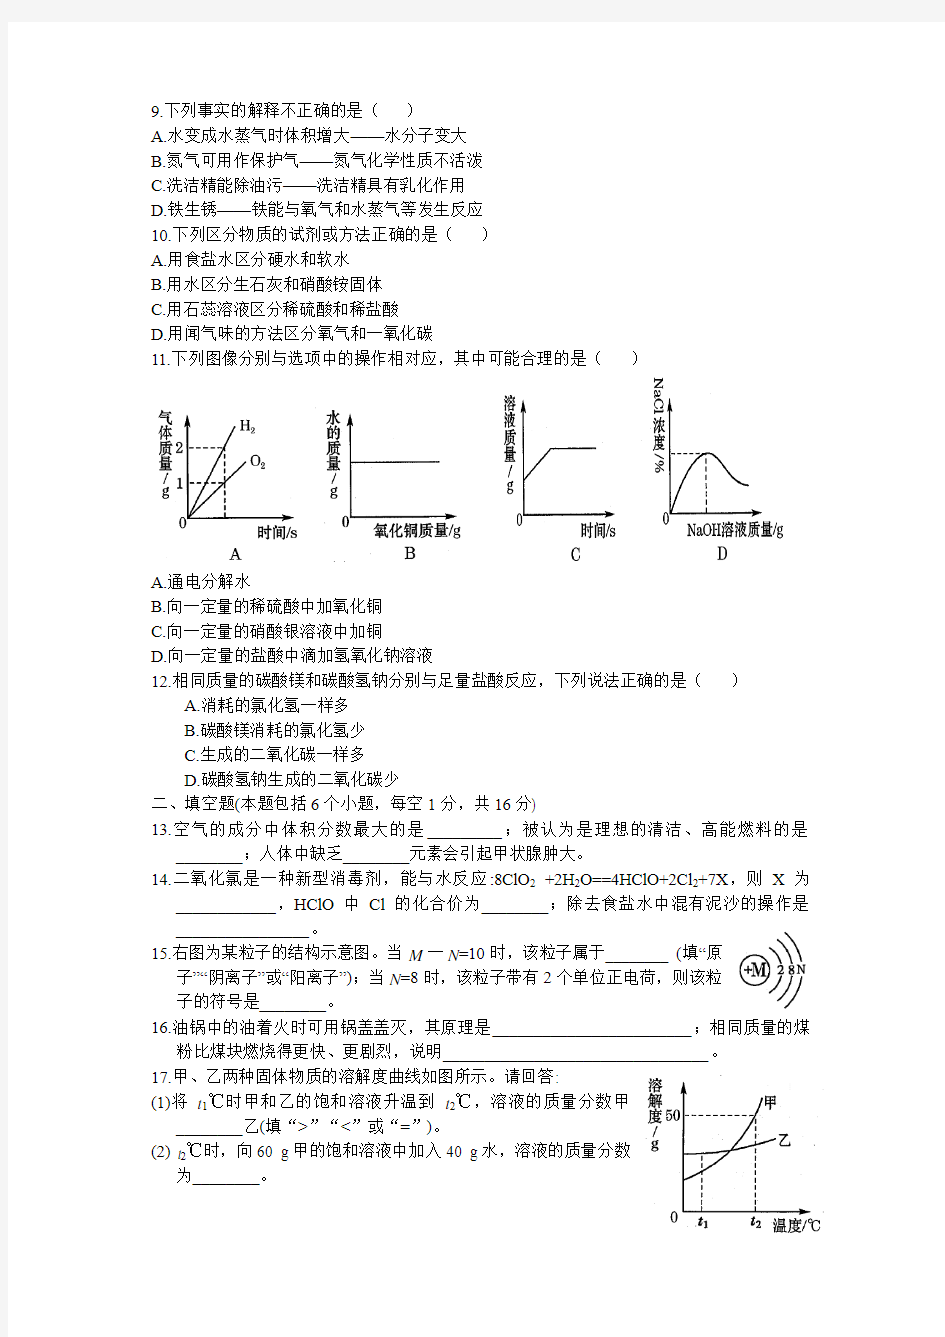 2015年河南省普通高中招生考试试卷(B)及答案